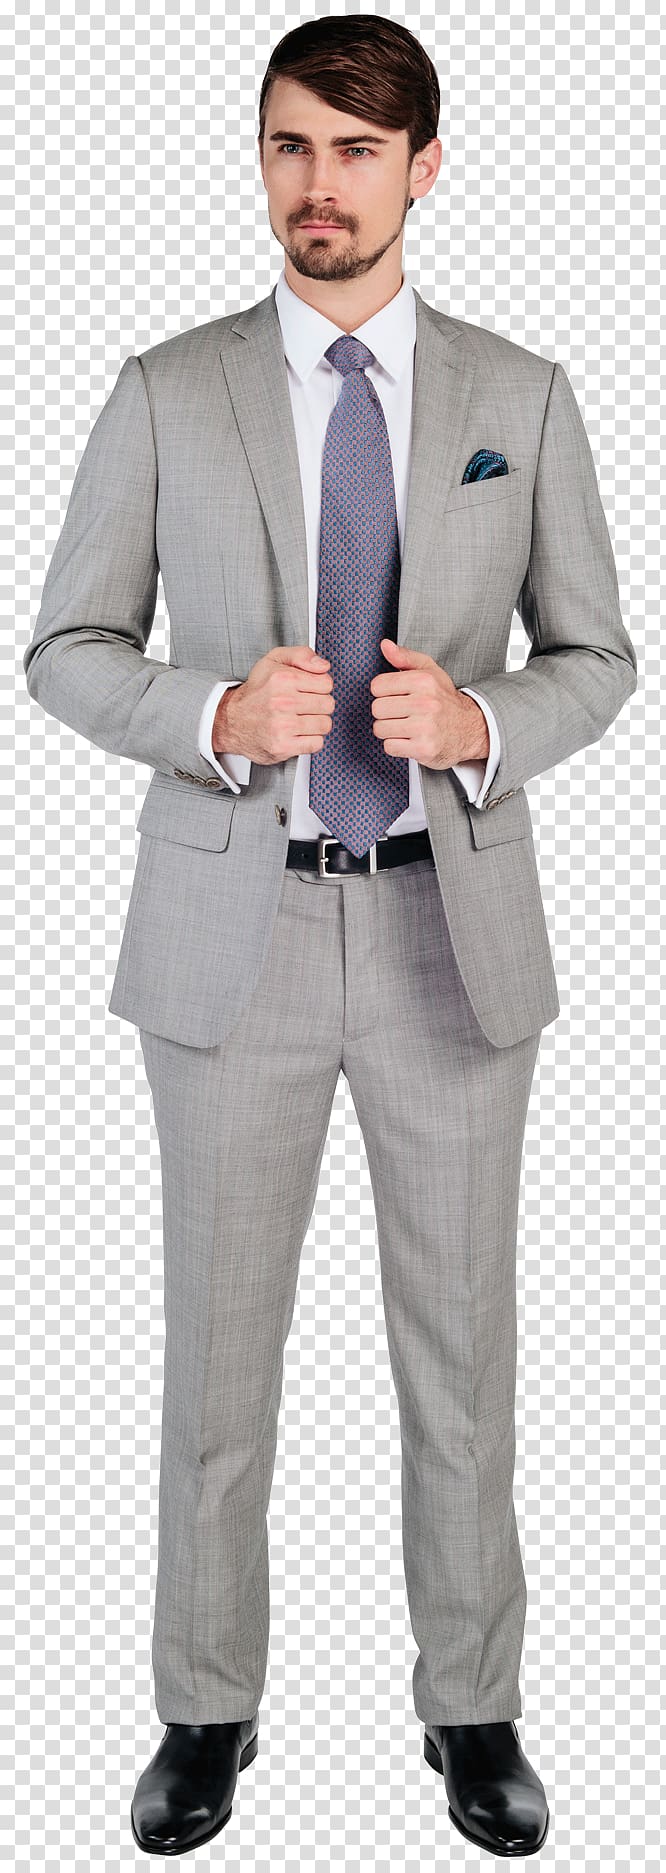 Suit Tuxedo Necktie Formal wear Businessperson, suit transparent ...